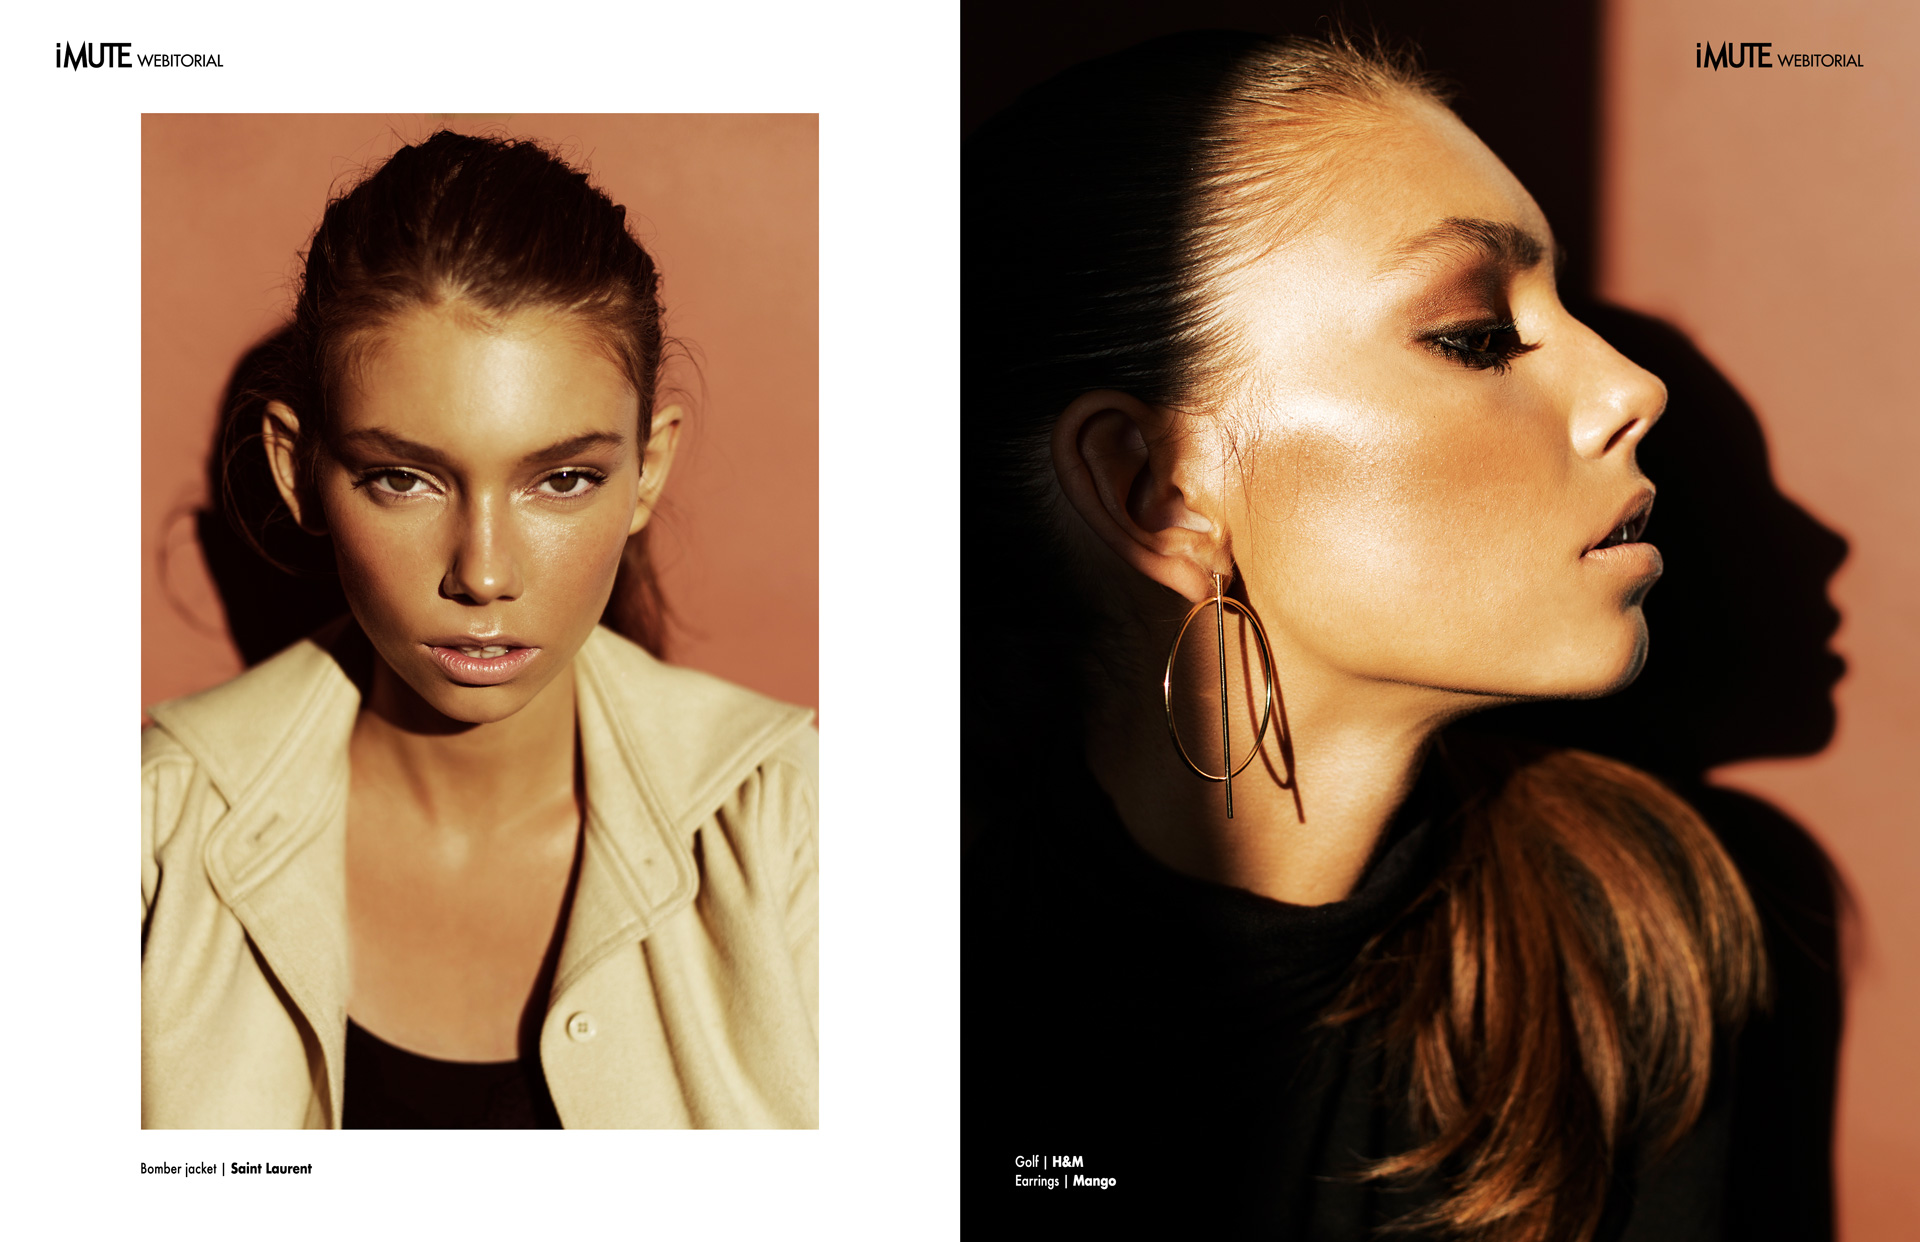 Alicja webitorial for iMute Magazine Photographer | Magdalena Kozicka Model | Alicja @ New Age Models Stylist | Agnieszka Anikin @ Art of Style Make up | Katarzyna Biały